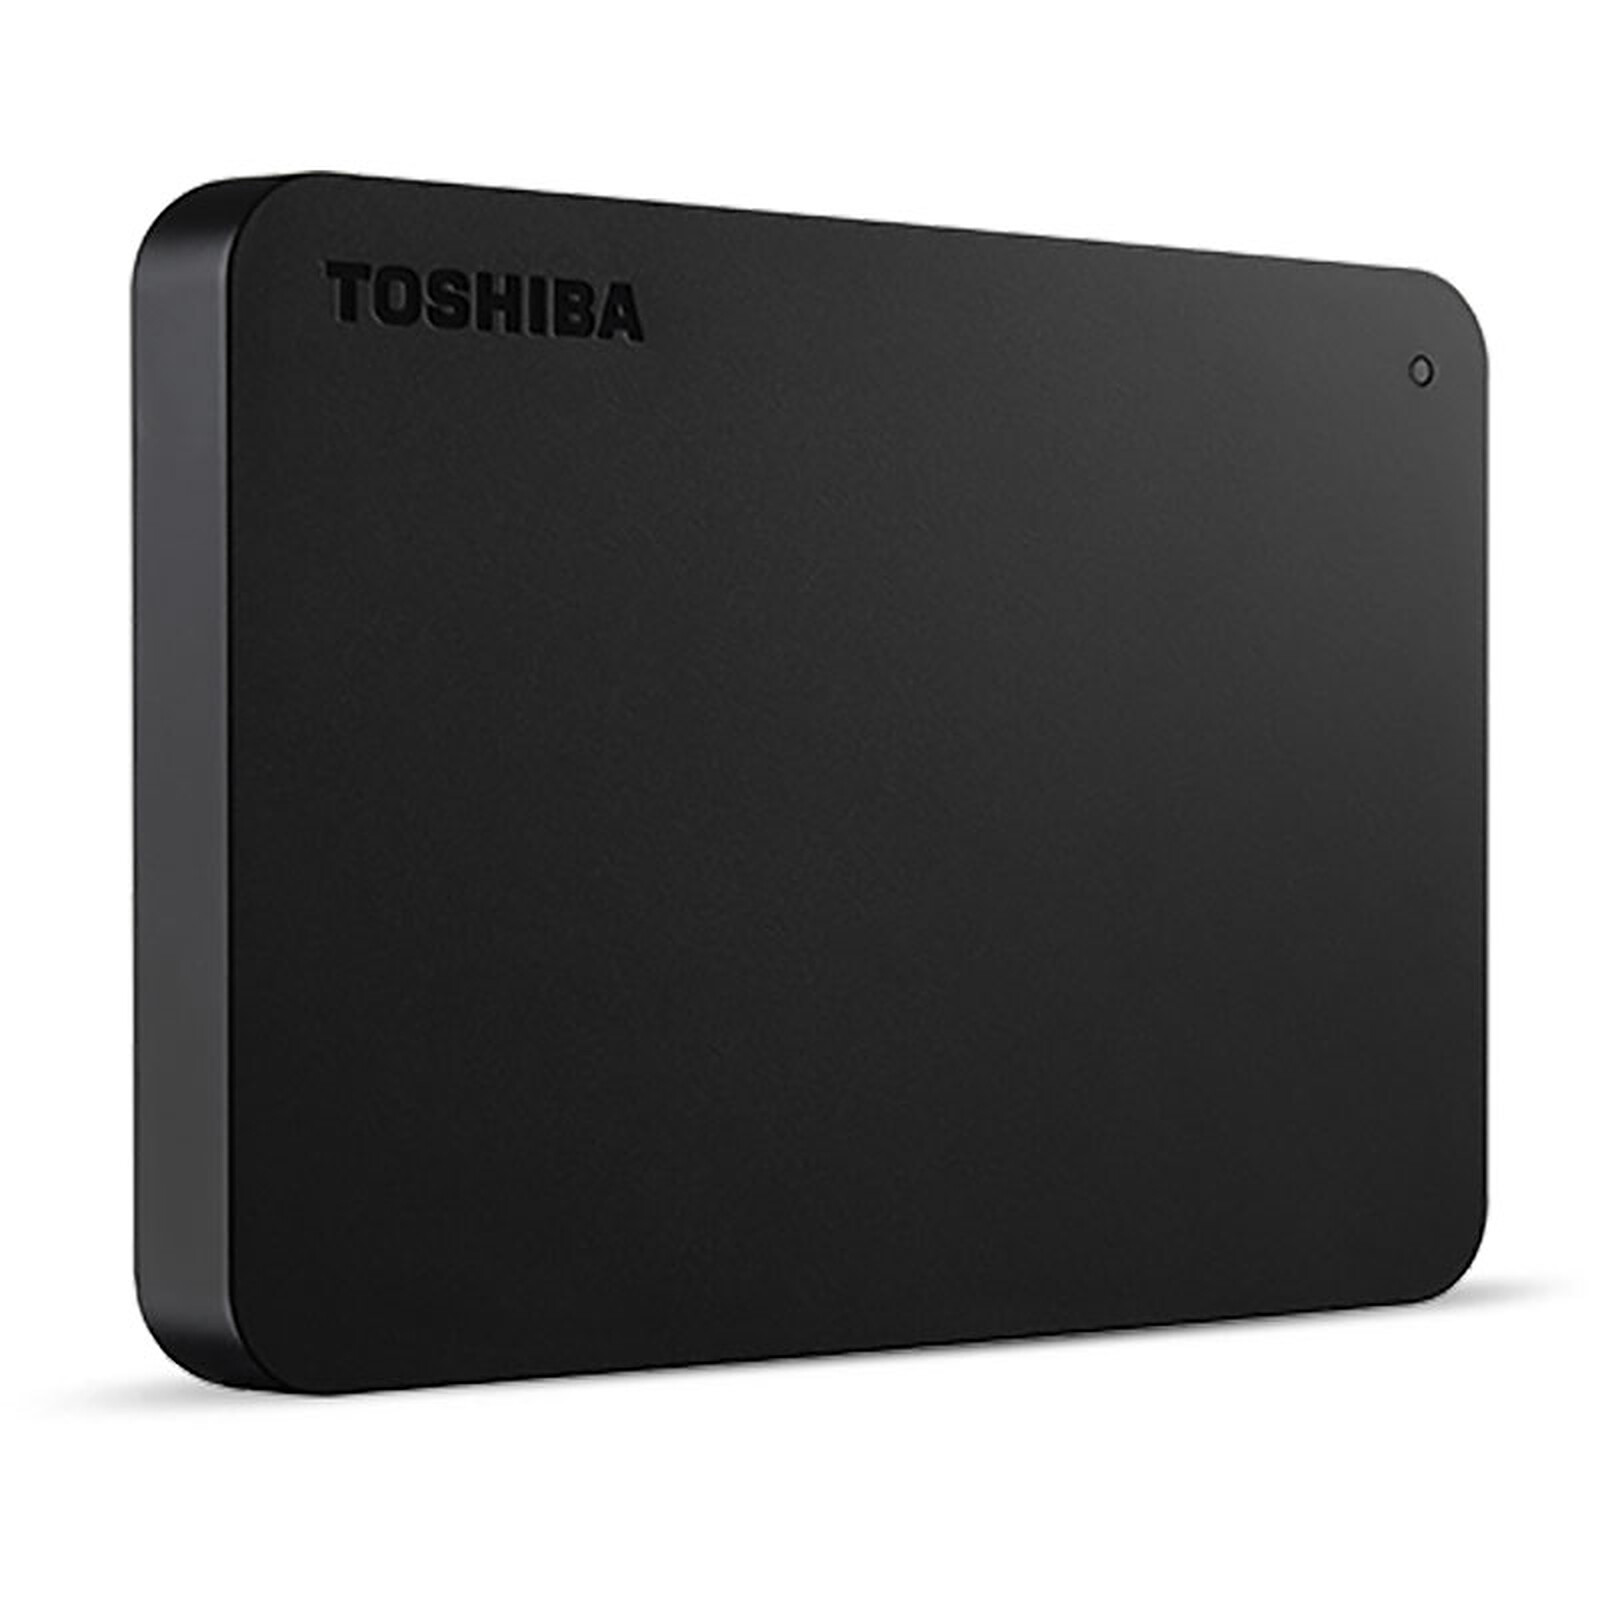 Toshiba Canvio Basics 1 To Noir - Disque dur externe - Garantie 3